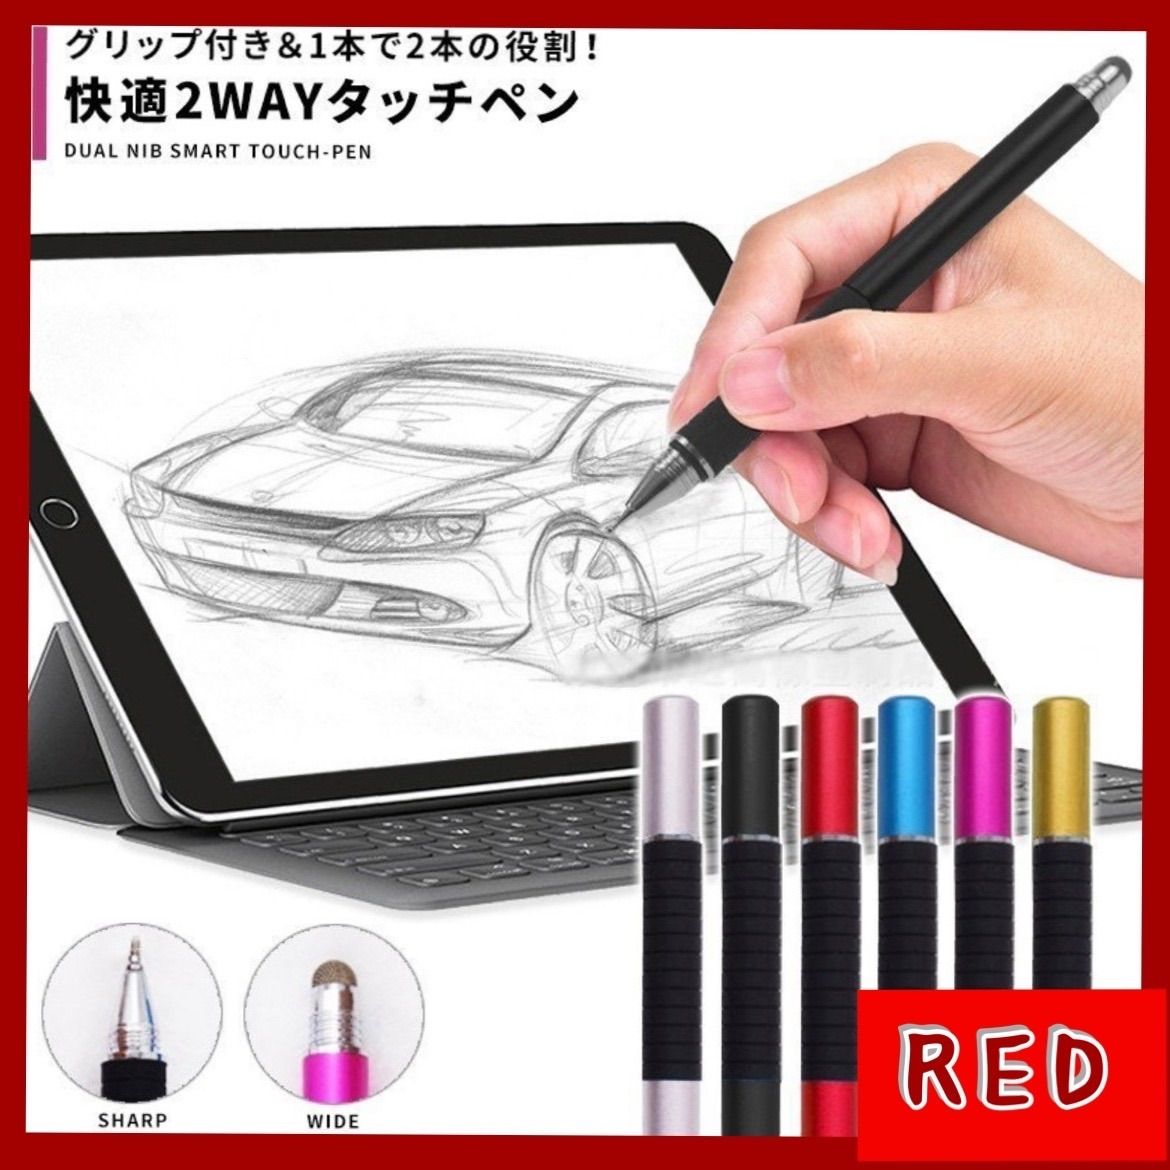 赤 スマート液晶タッチペン 極細/ワイド2WAY メルカリShops